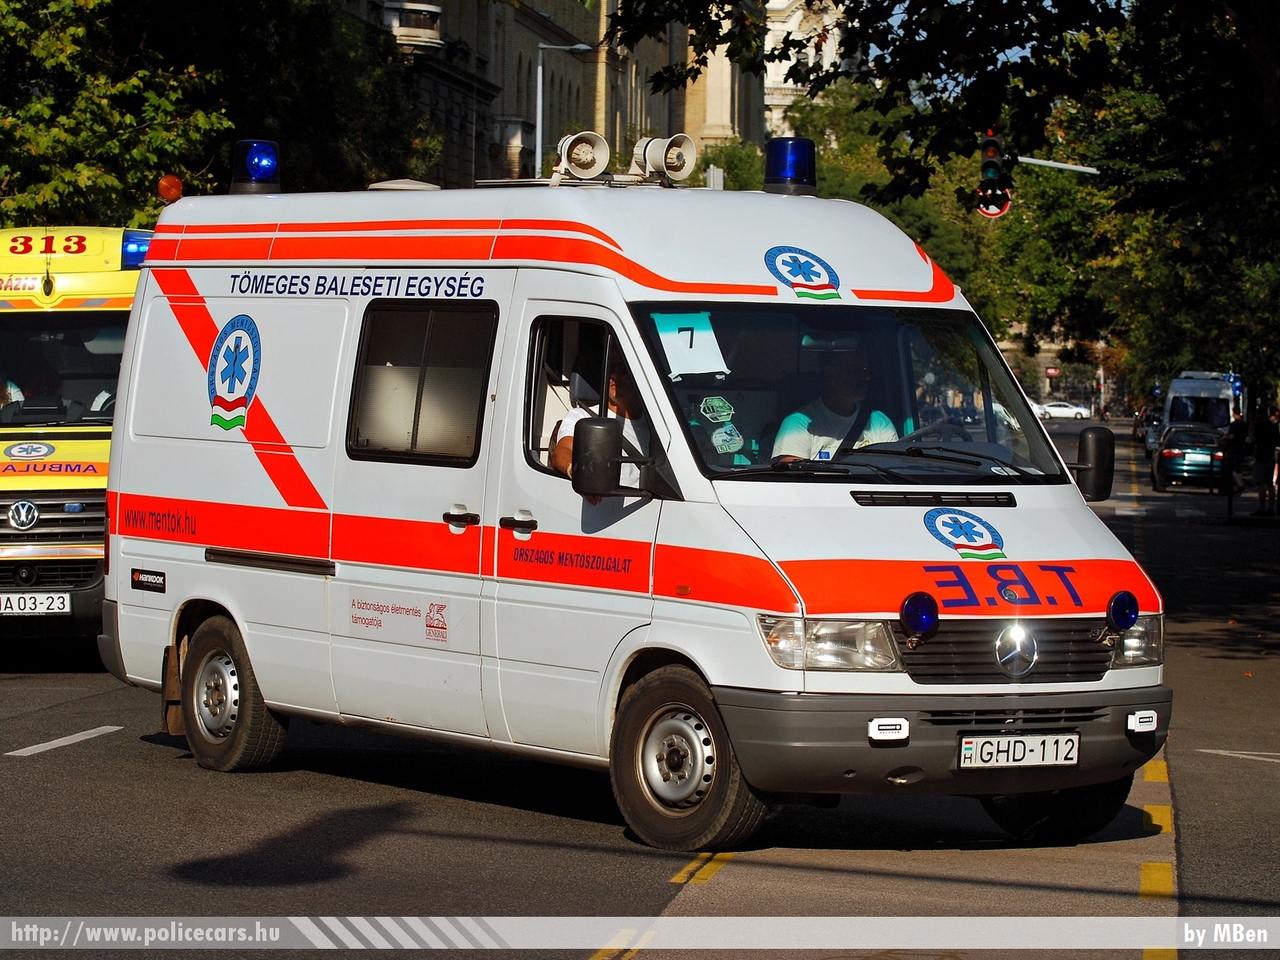 Mercedes-Benz Sprinter 314, TBE, Országos Mentõszolgálat, fotó: MBen
Keywords: magyar Magyarország mentő mentőautó OMSZ Hungary hungarian ambulance GHD-112